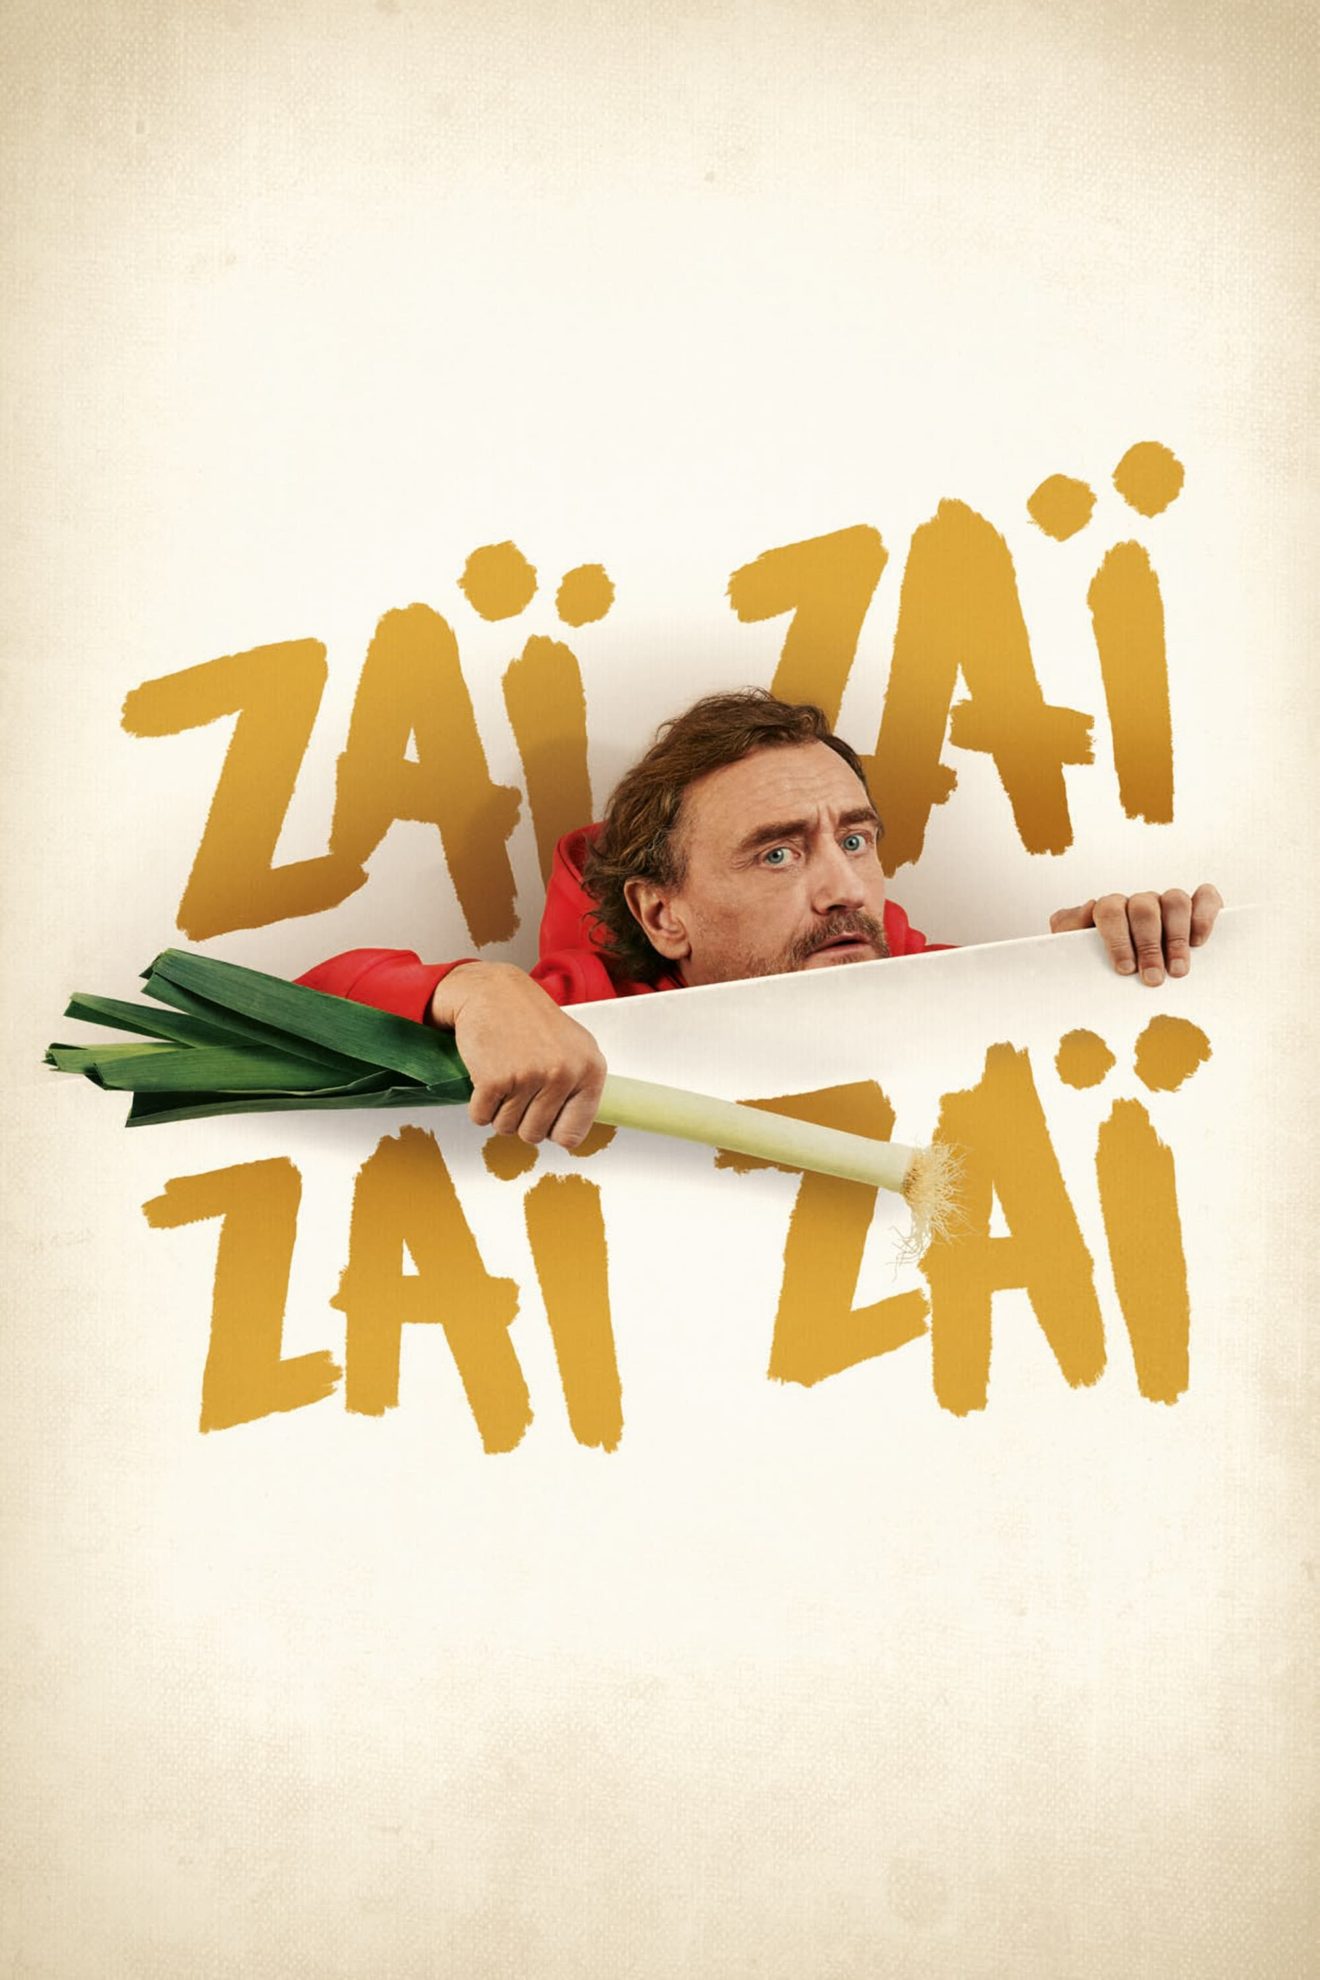 Affiche du film "Zaï Zaï Zaï Zaï"